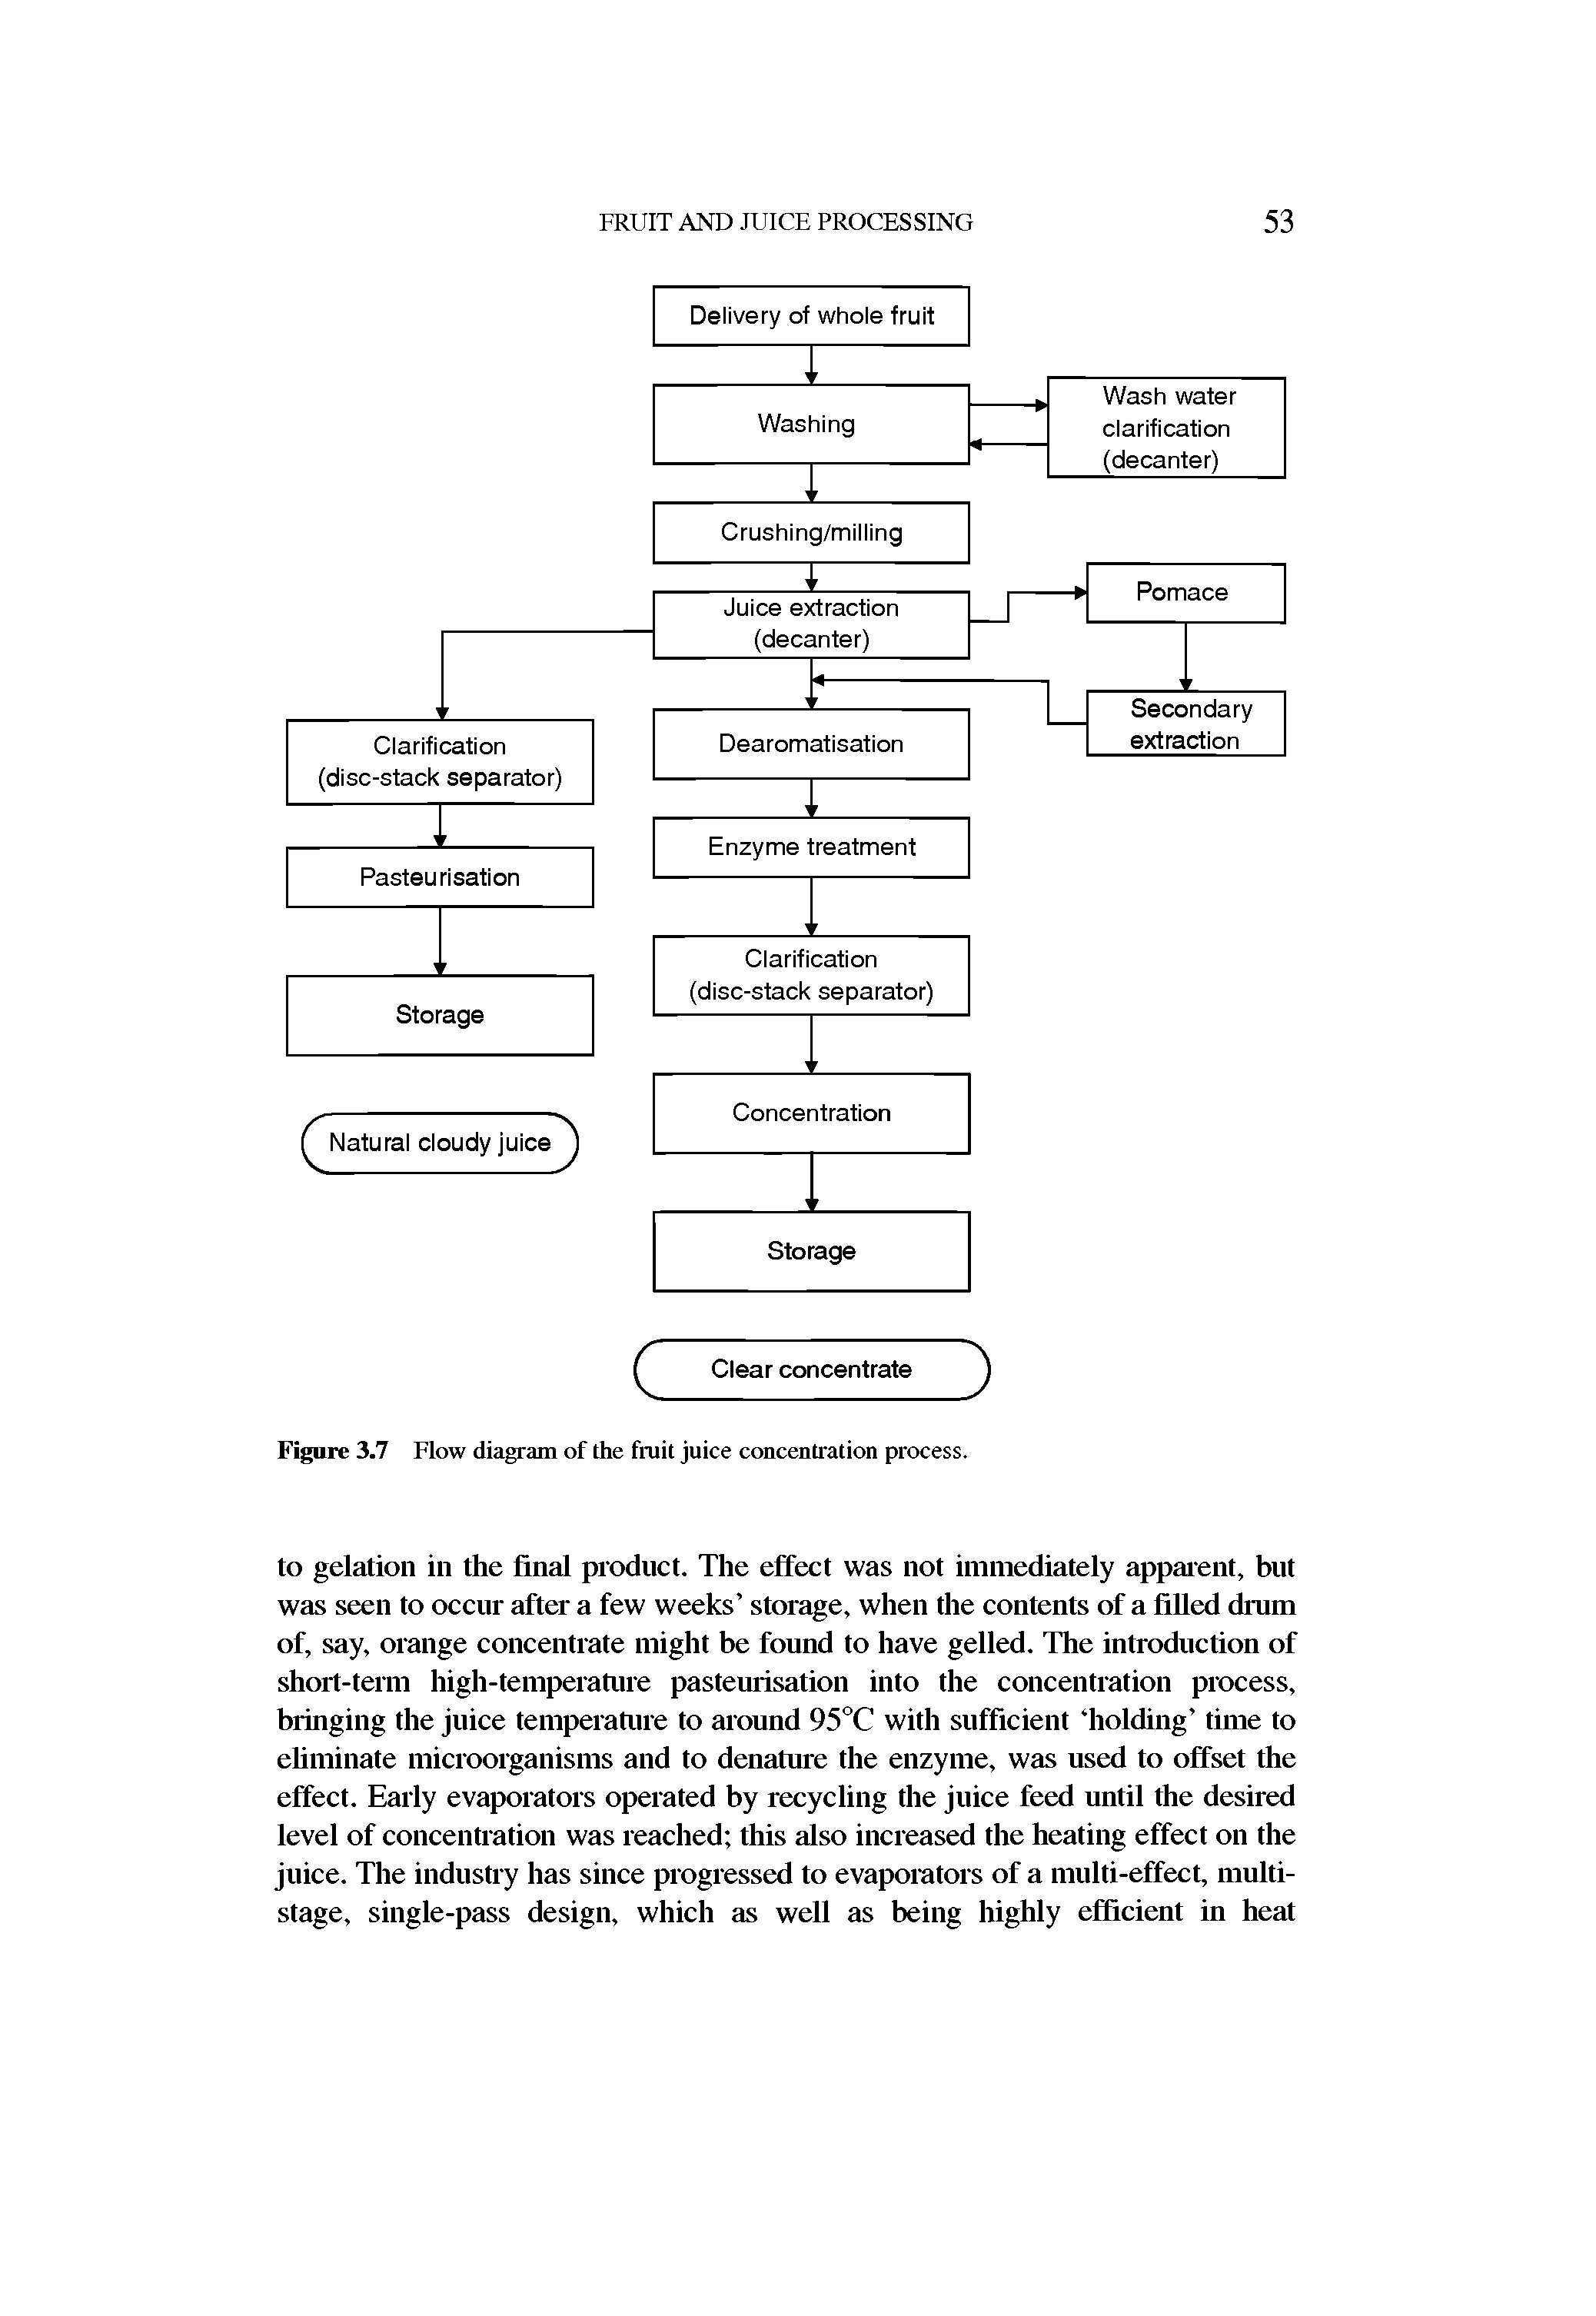 Figure 3.7 Flow diagram of the fruit juice concentration process.